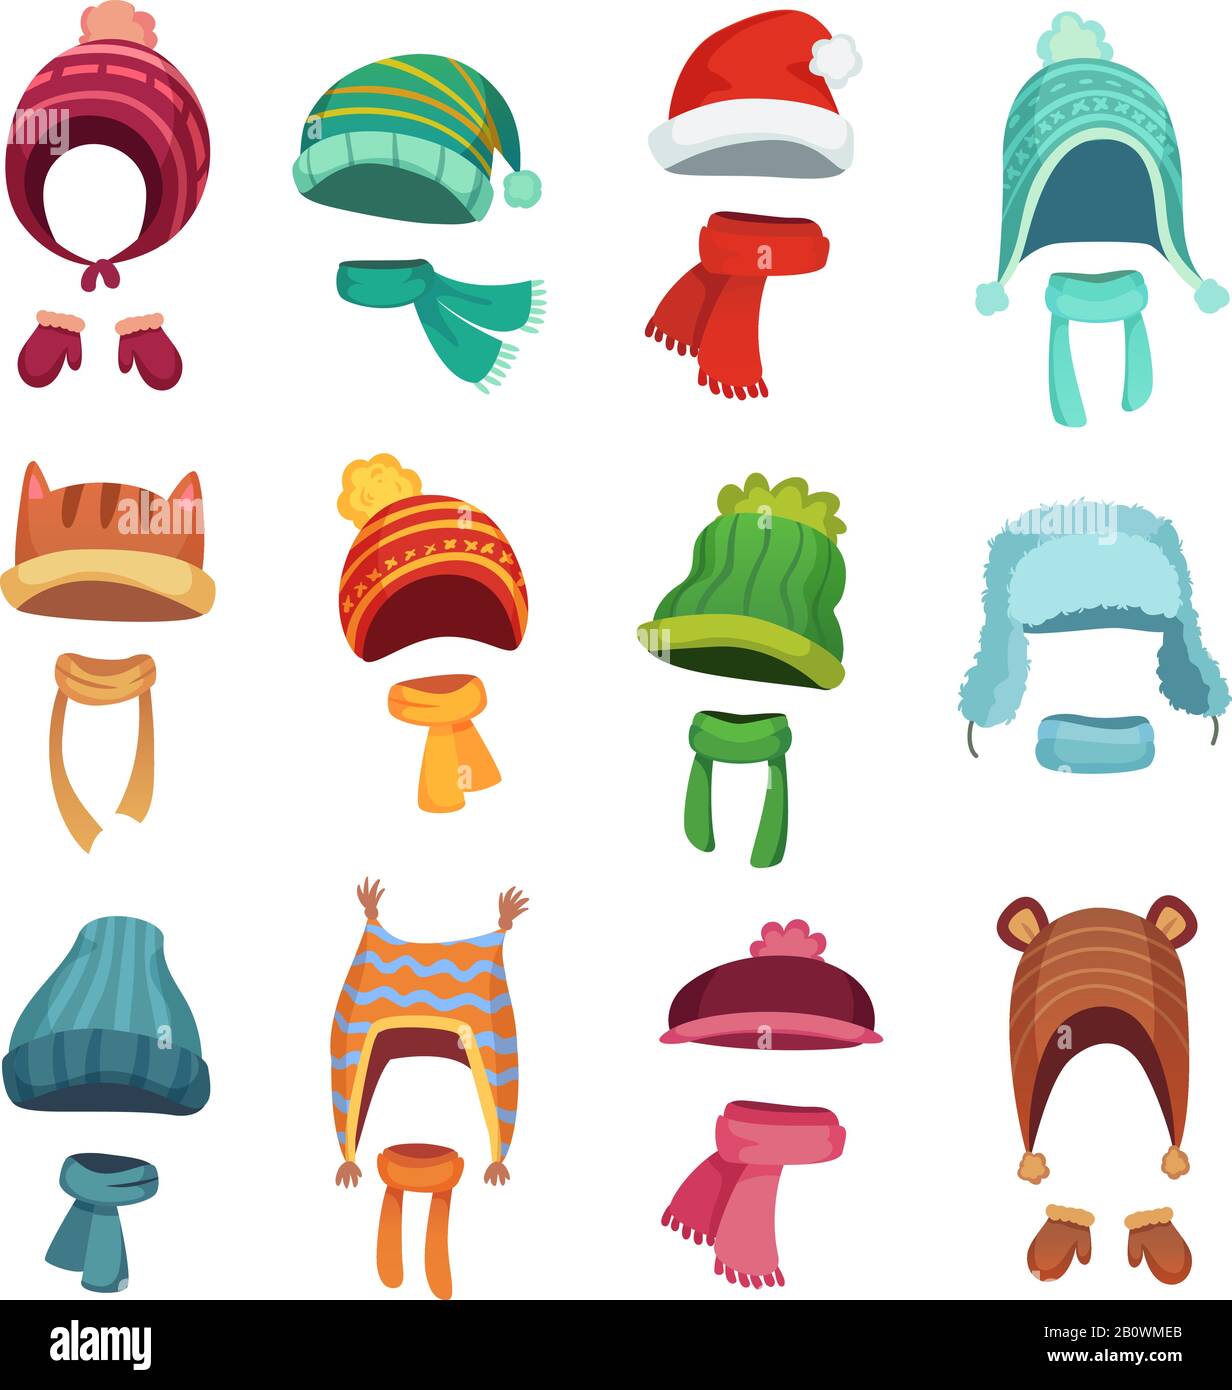 Wintermütze für Kinder. Warme Hüte und Schals für Kinder. Kopfbedeckung und Accessoires für Jungen und Mädchen Cartoon-Vektor-Set Stock Vektor